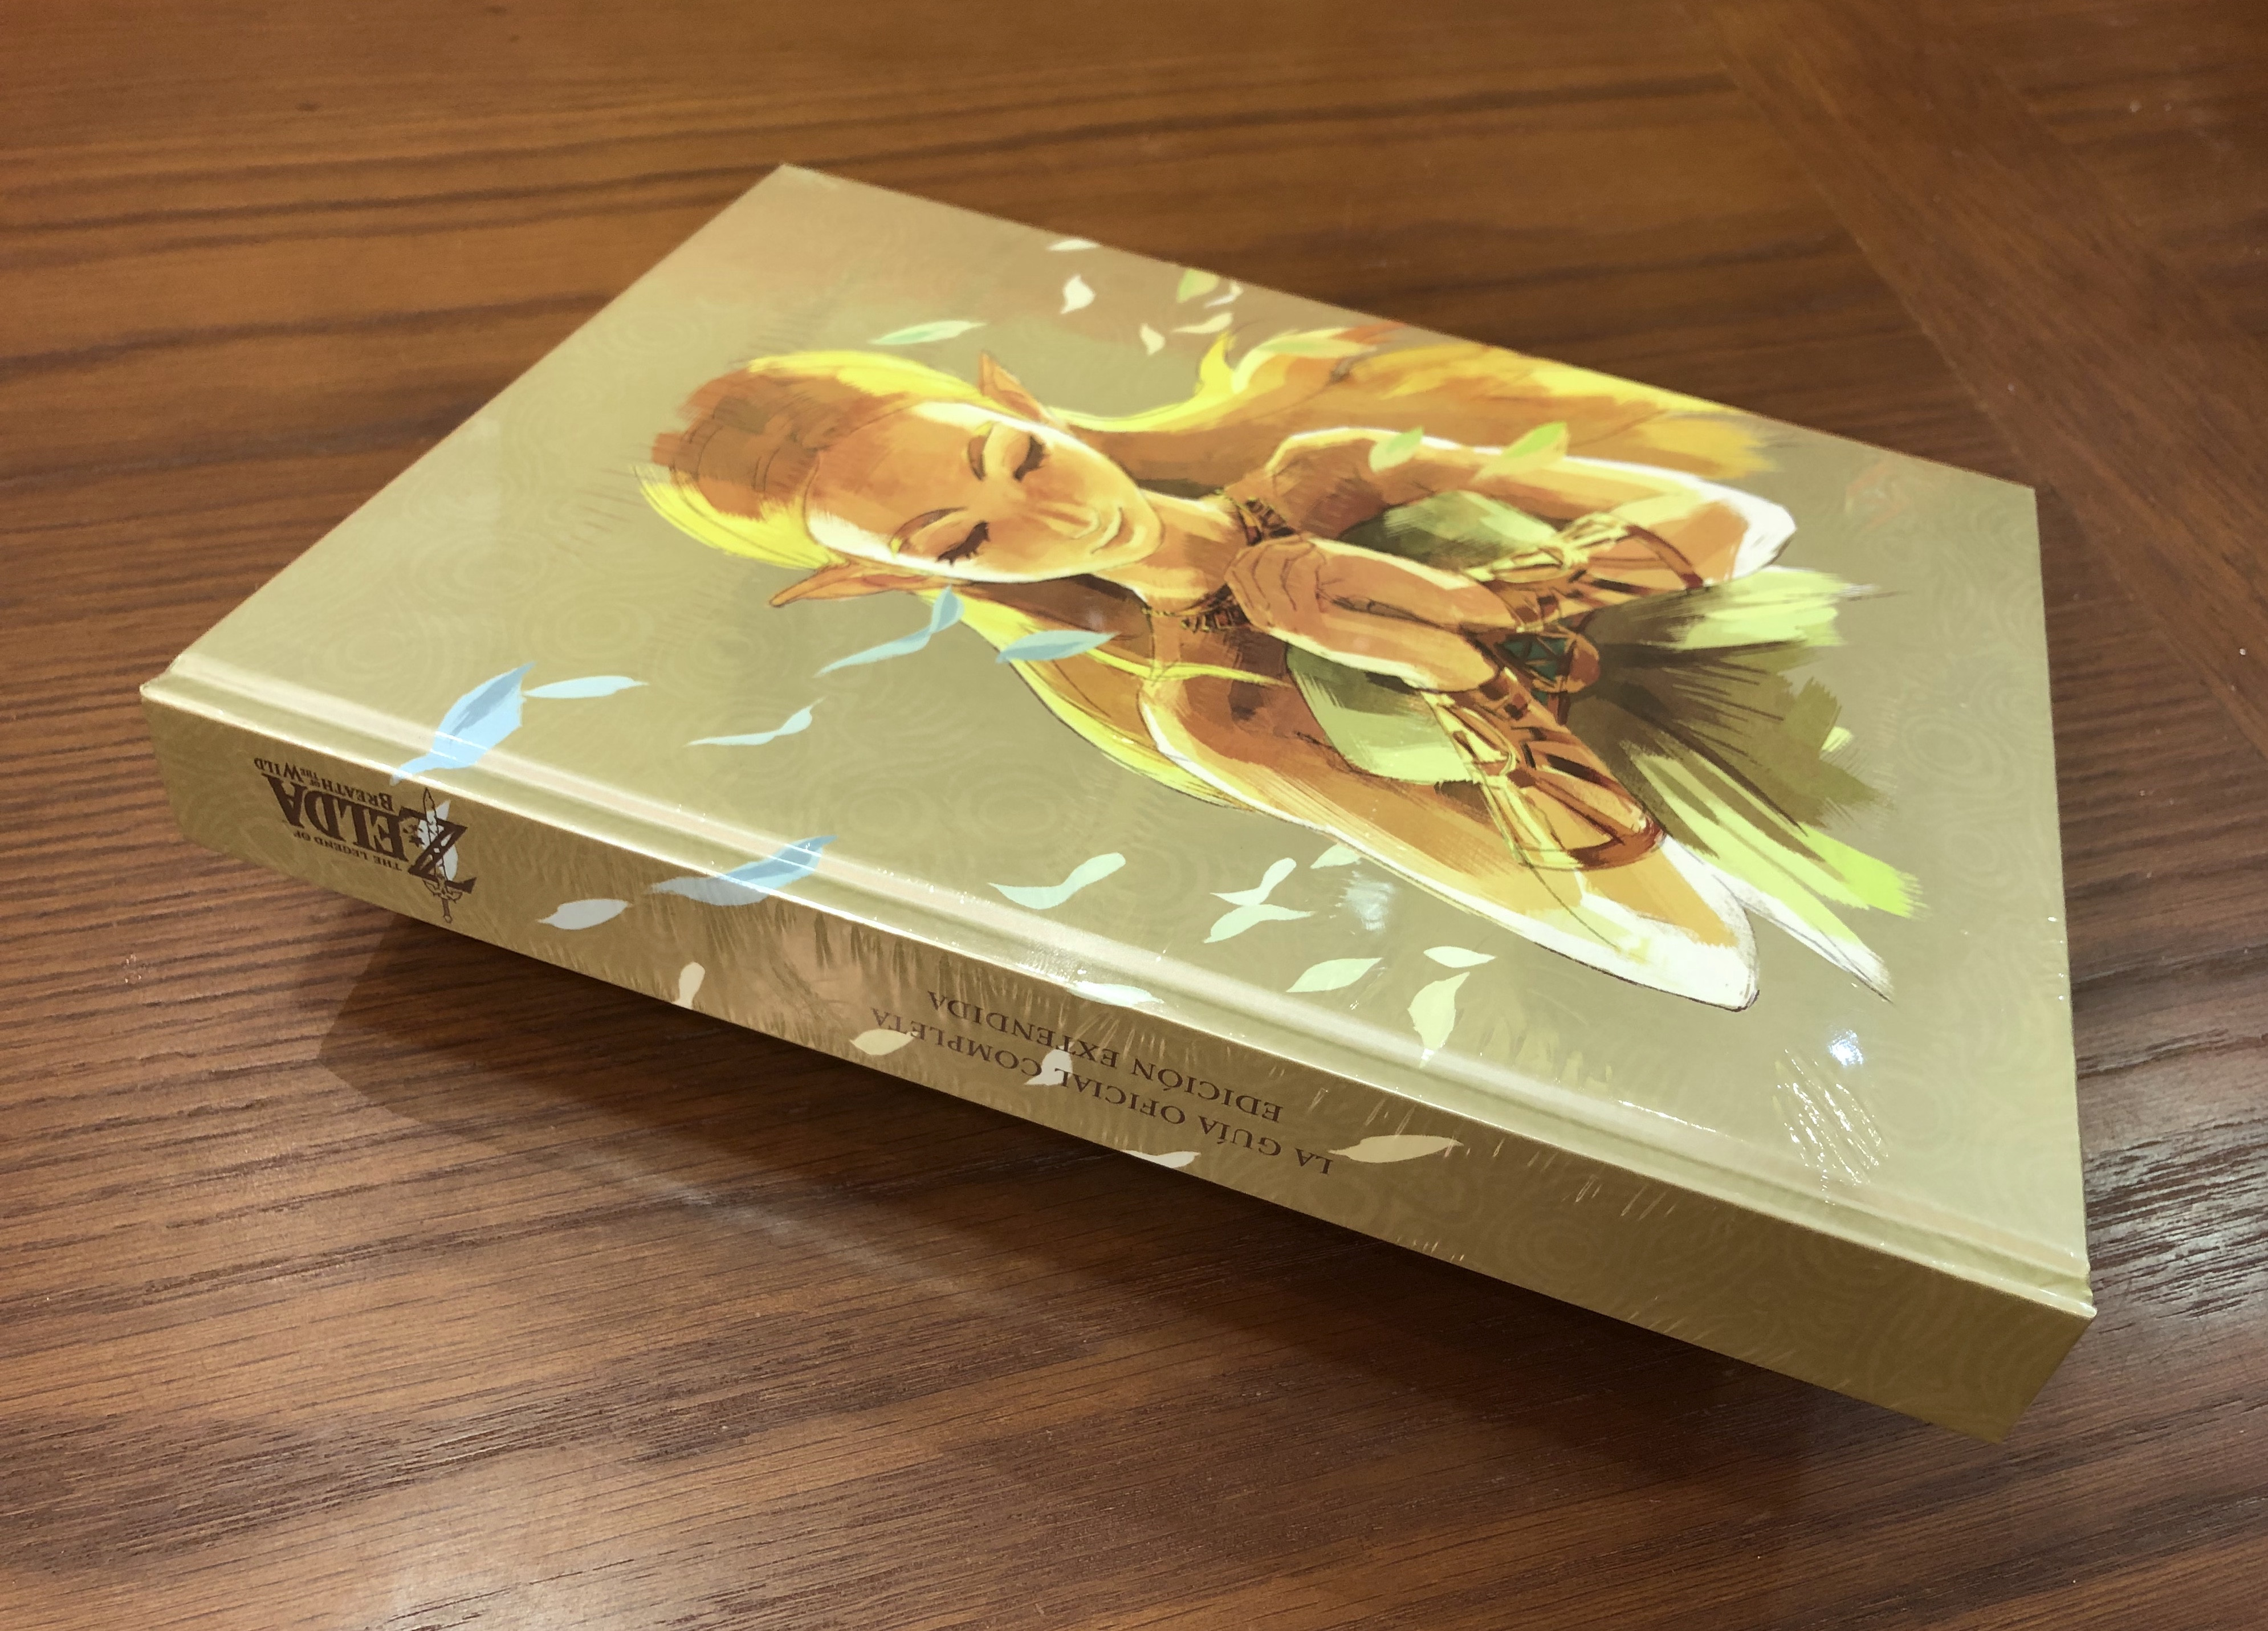 Retraso de la edición Deluxe de la Guía de Breath of the Wild - Universo  Zelda